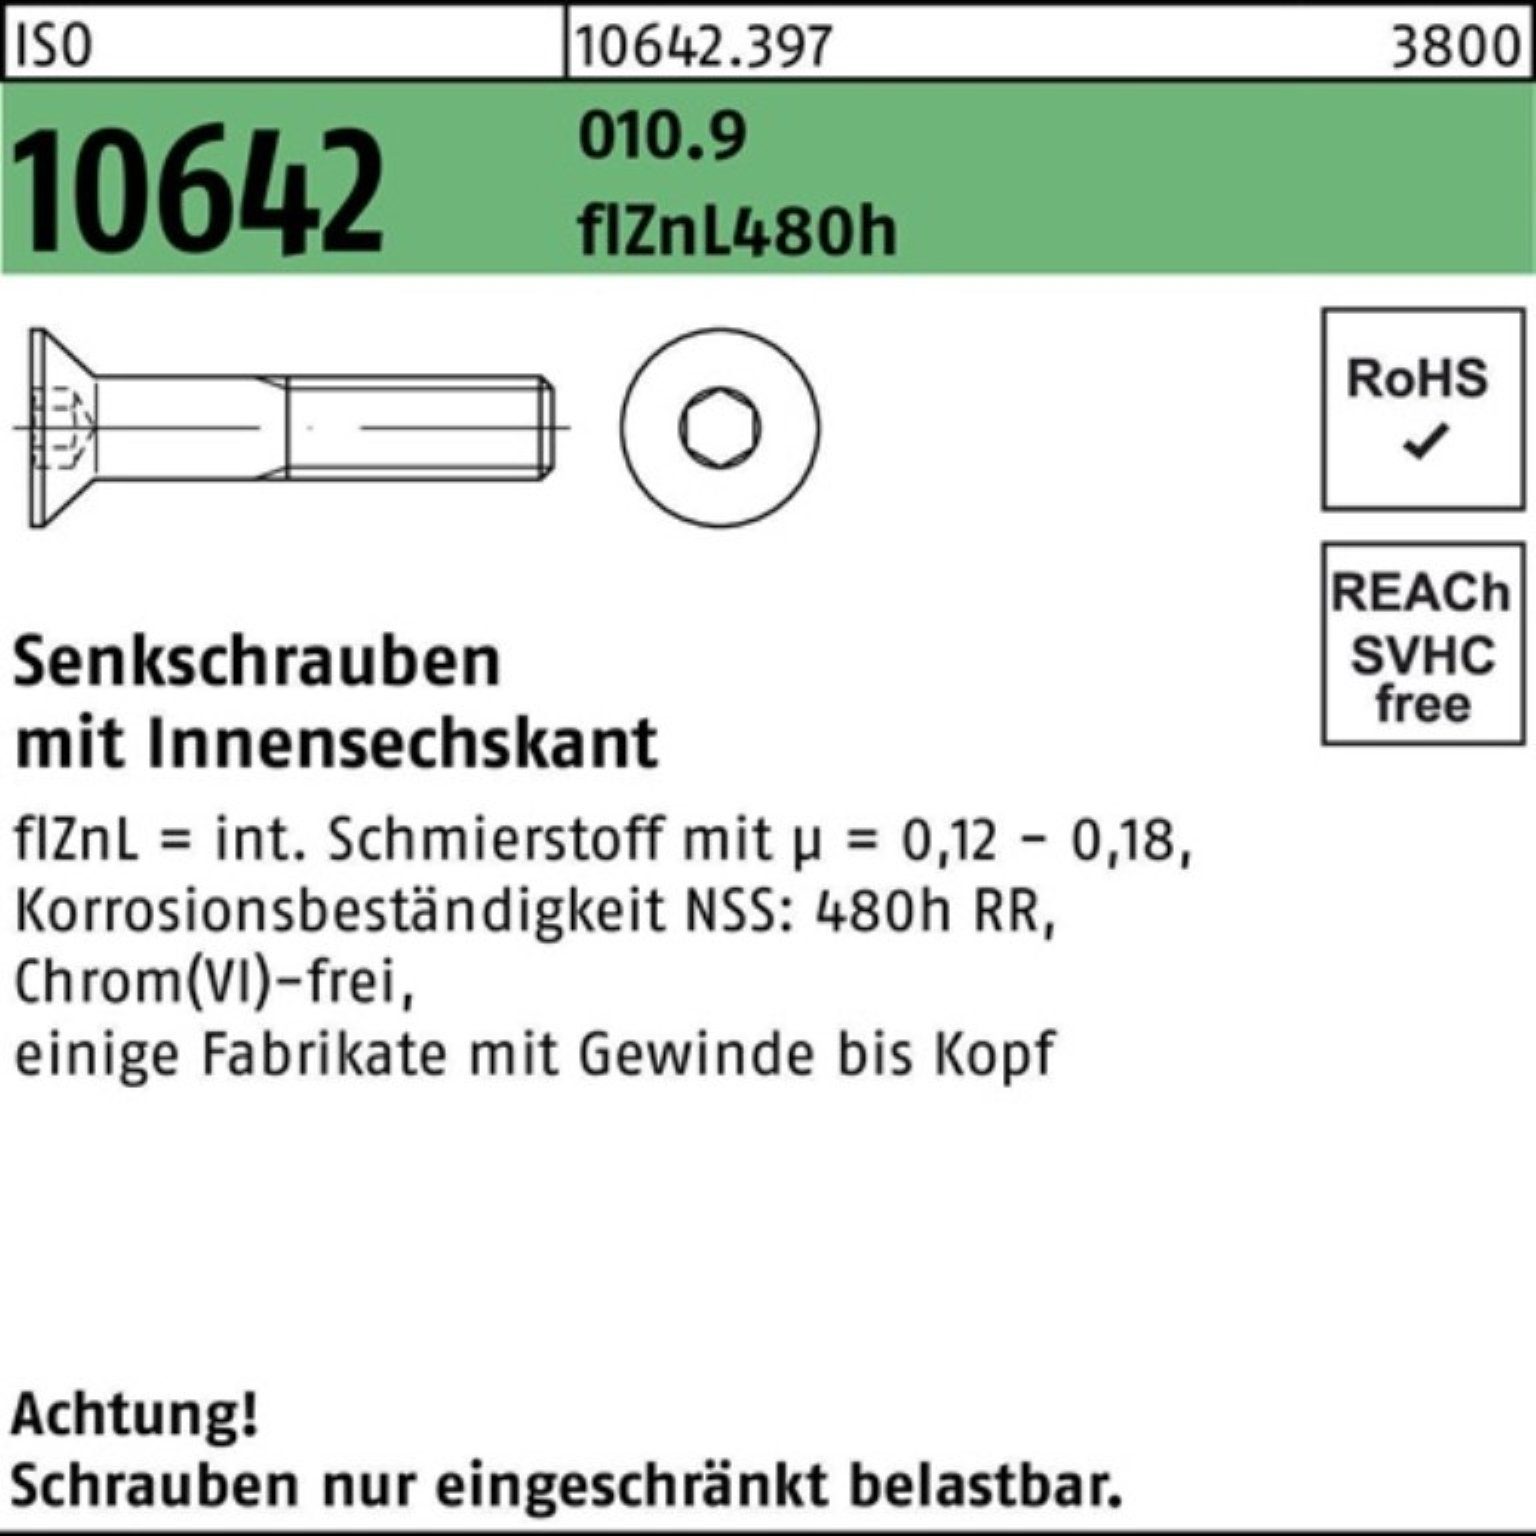 Reyher Senkschraube 100er Pack M16x35 flZnL ISO 480h zi 010.9 Innen-6kt Senkschraube 10642